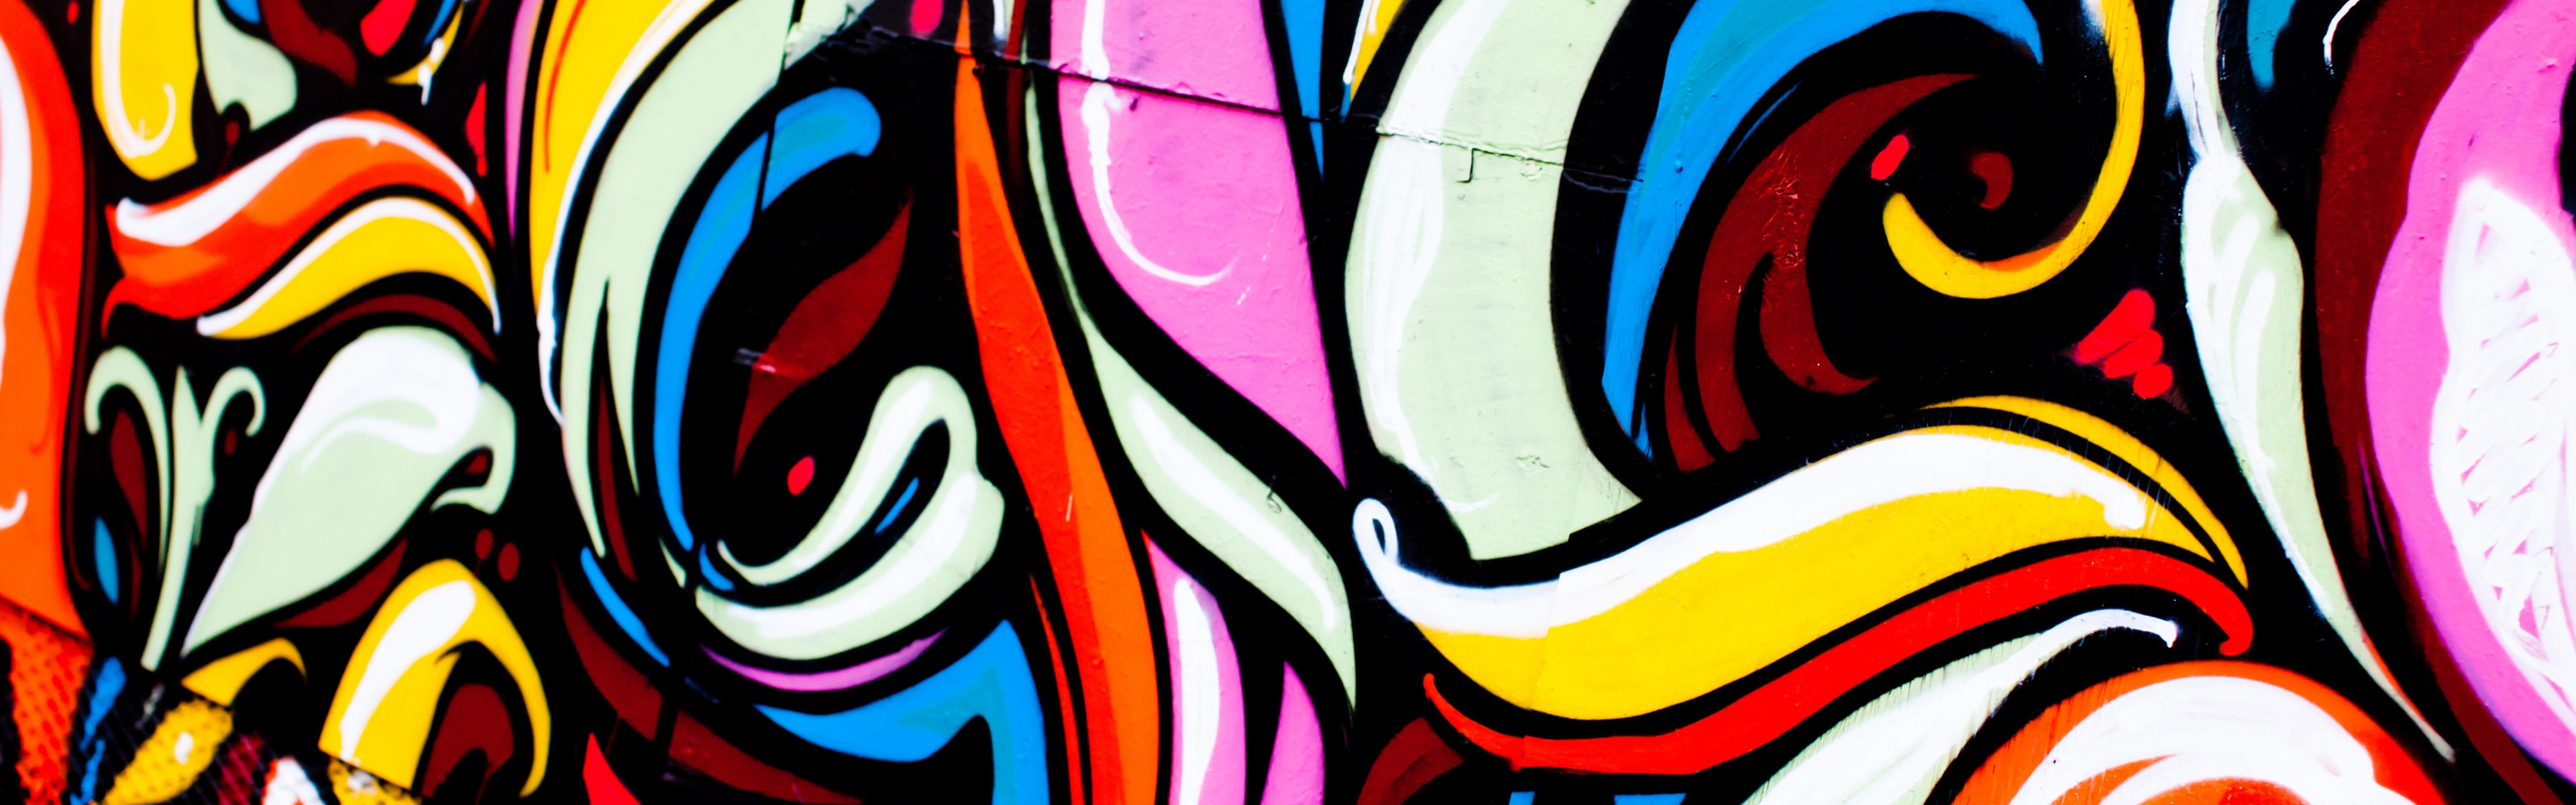 3840x1200 Art Of Graffiti iPhone Panoramic Wallpaper Download | iPad Wallpapers .